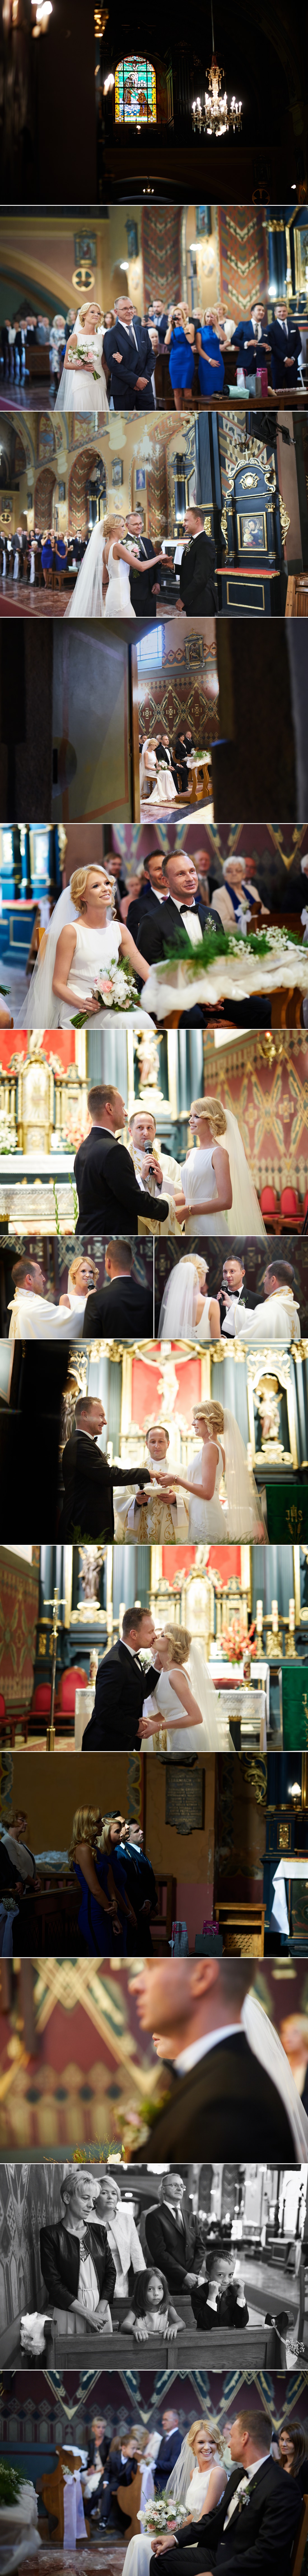 wesele w folwarku zalesie, reportaż ślubny, fotografia ślubna, justmarried, zdjecia slubne krakow